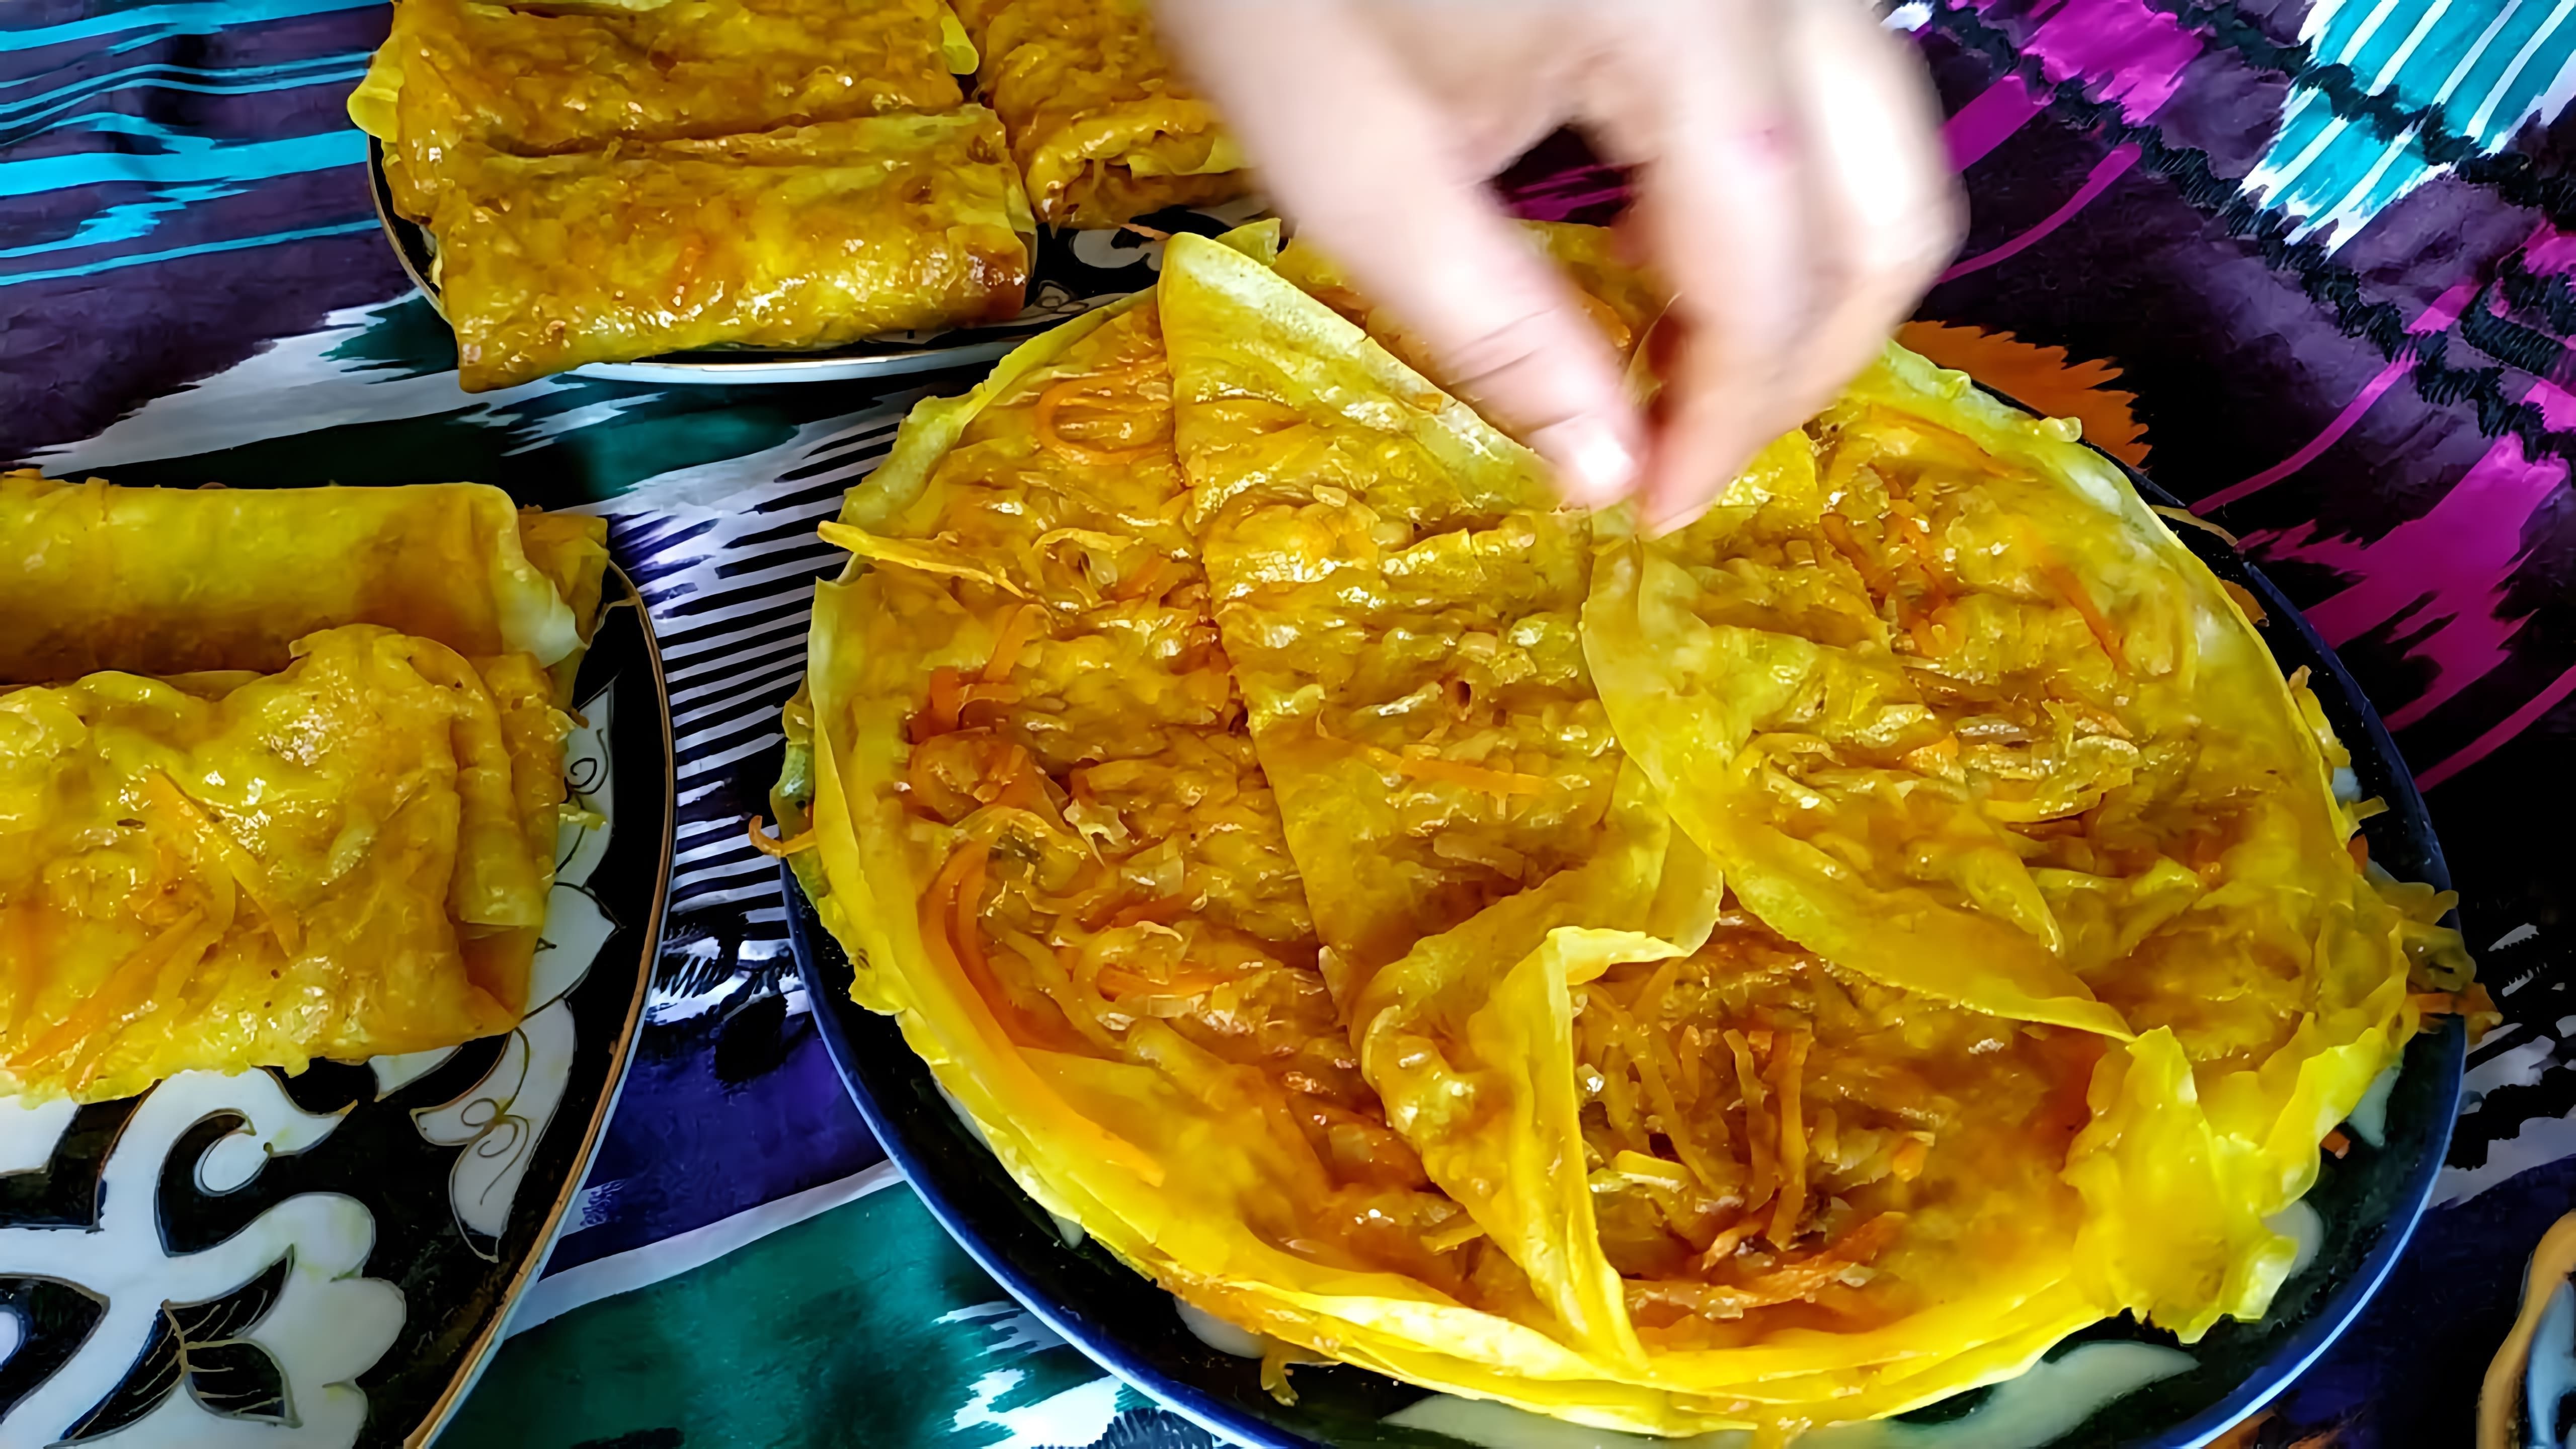 Вкуснятина за копейки - это видео-ролик, который показывает, как приготовить вкусное и недорогое блюдо из узбекской кухни